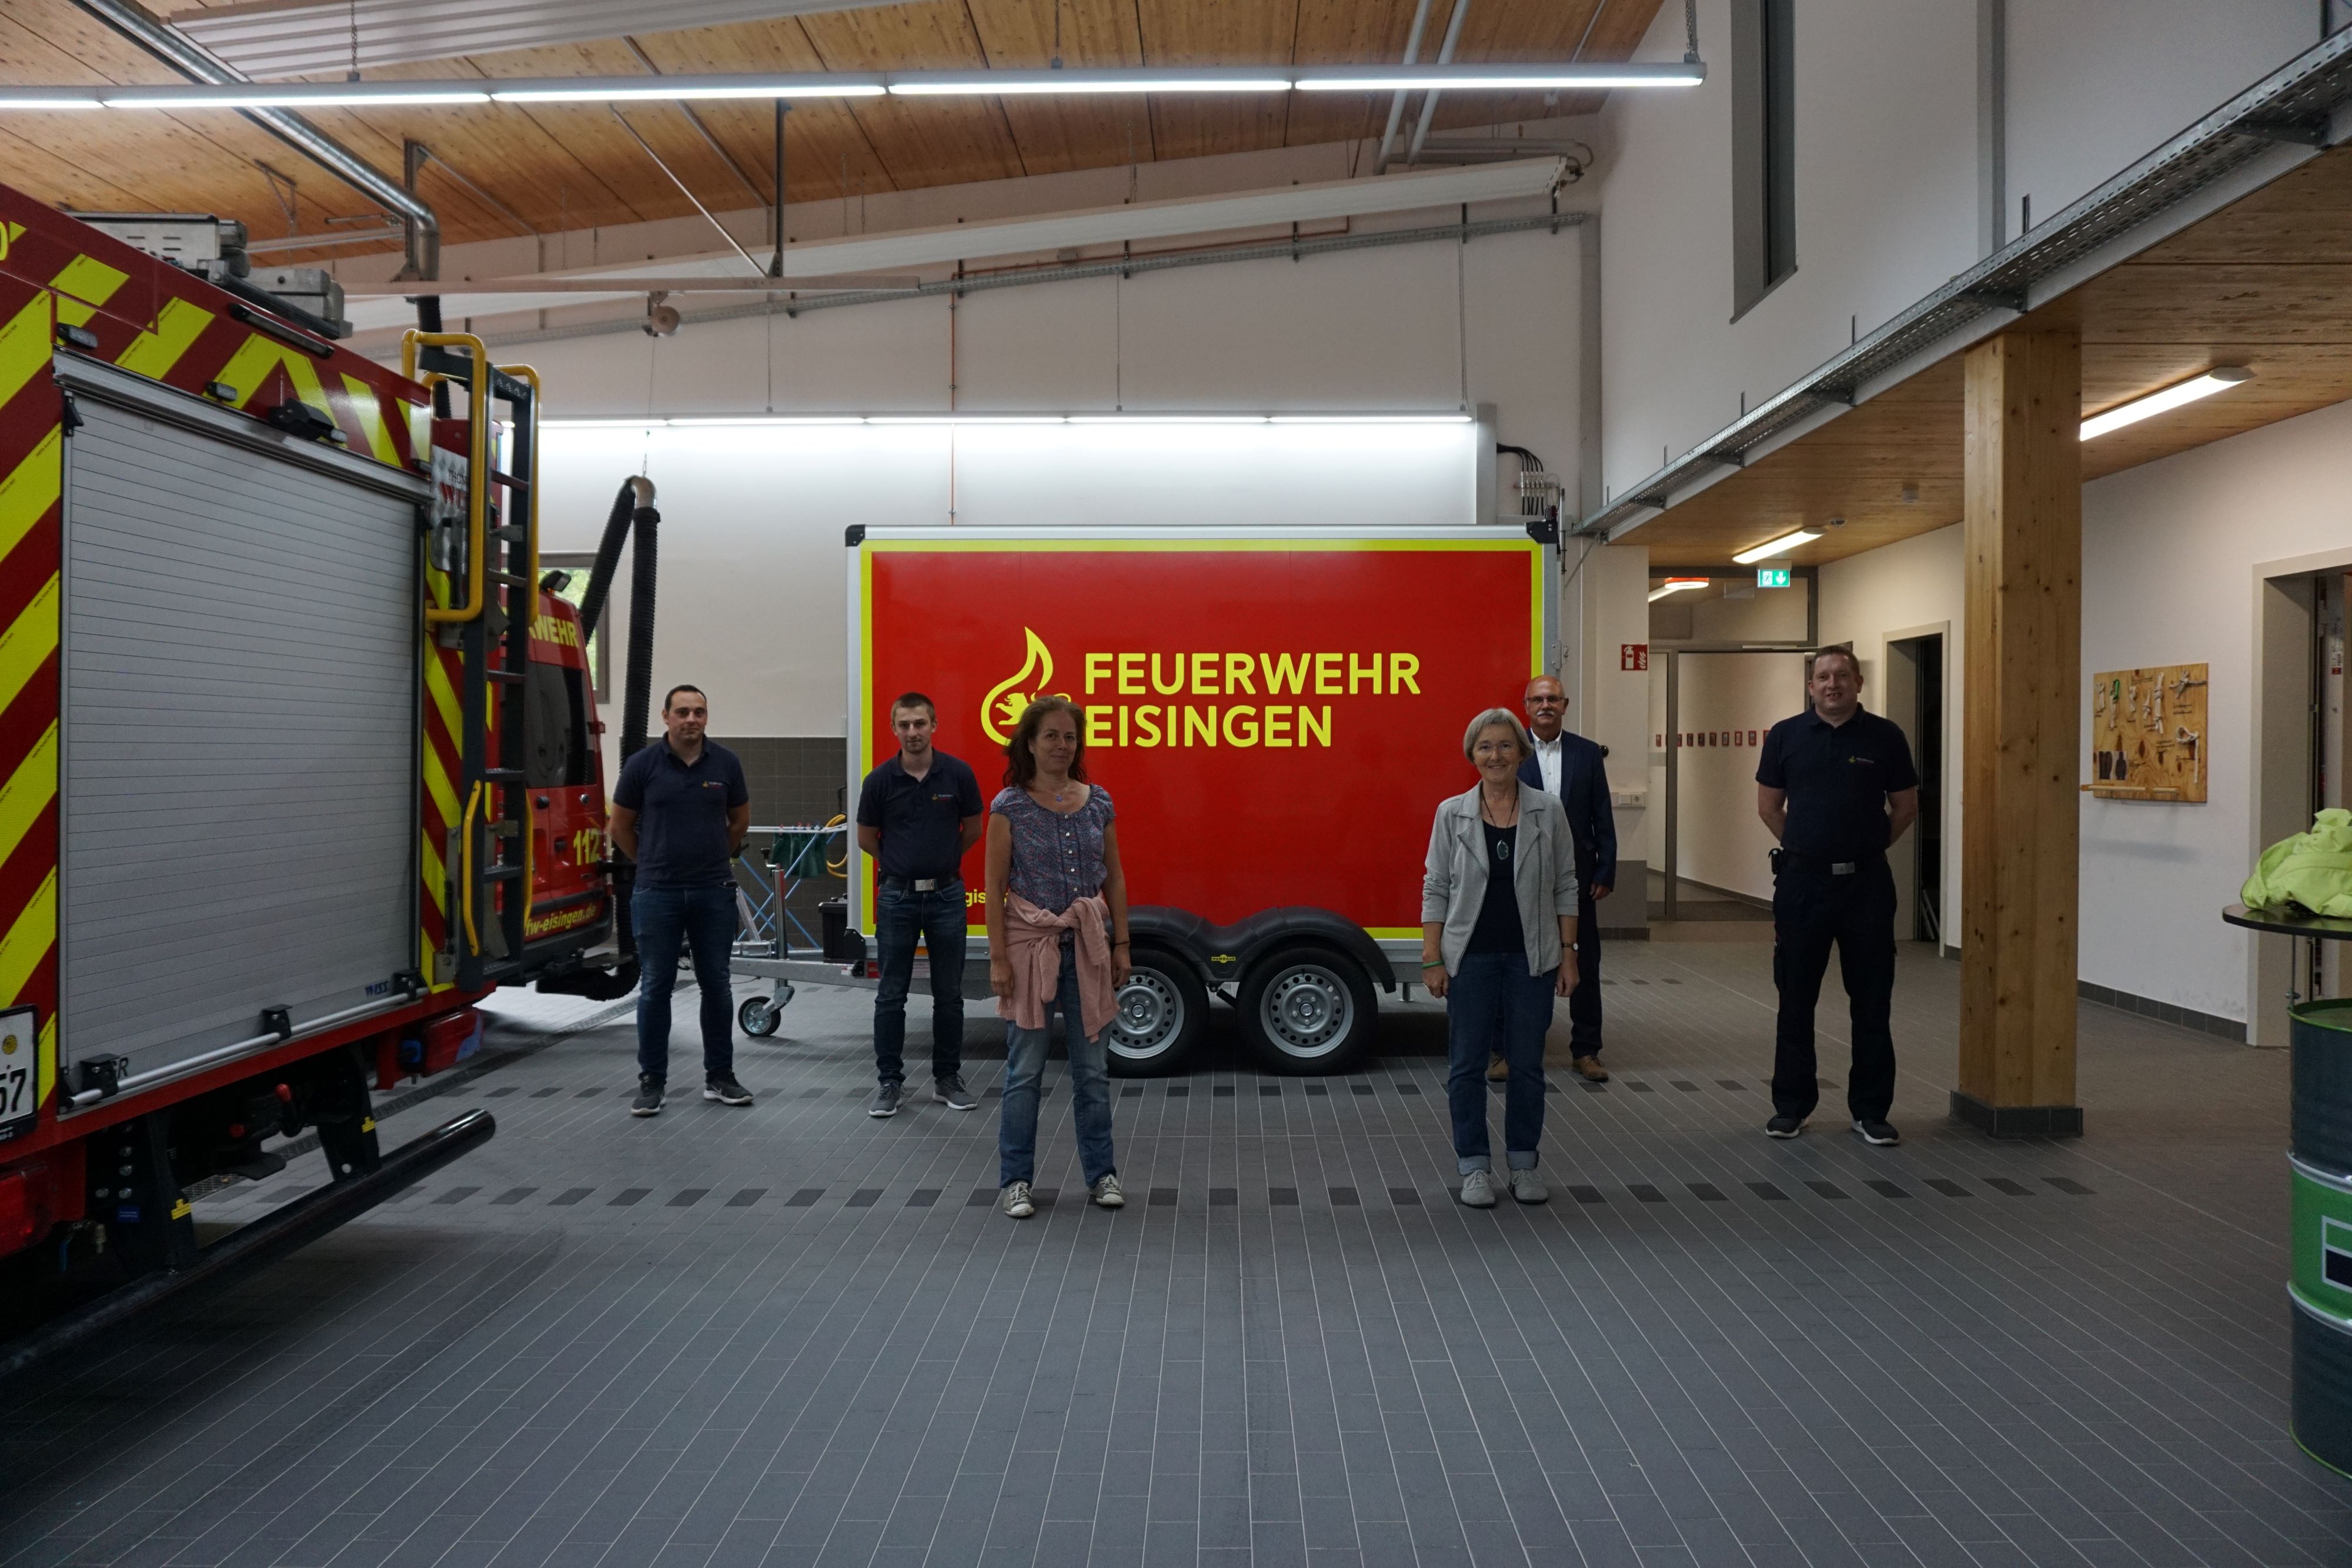 2020 08 31 Freiwillige Feuerwehr Eisingen v2